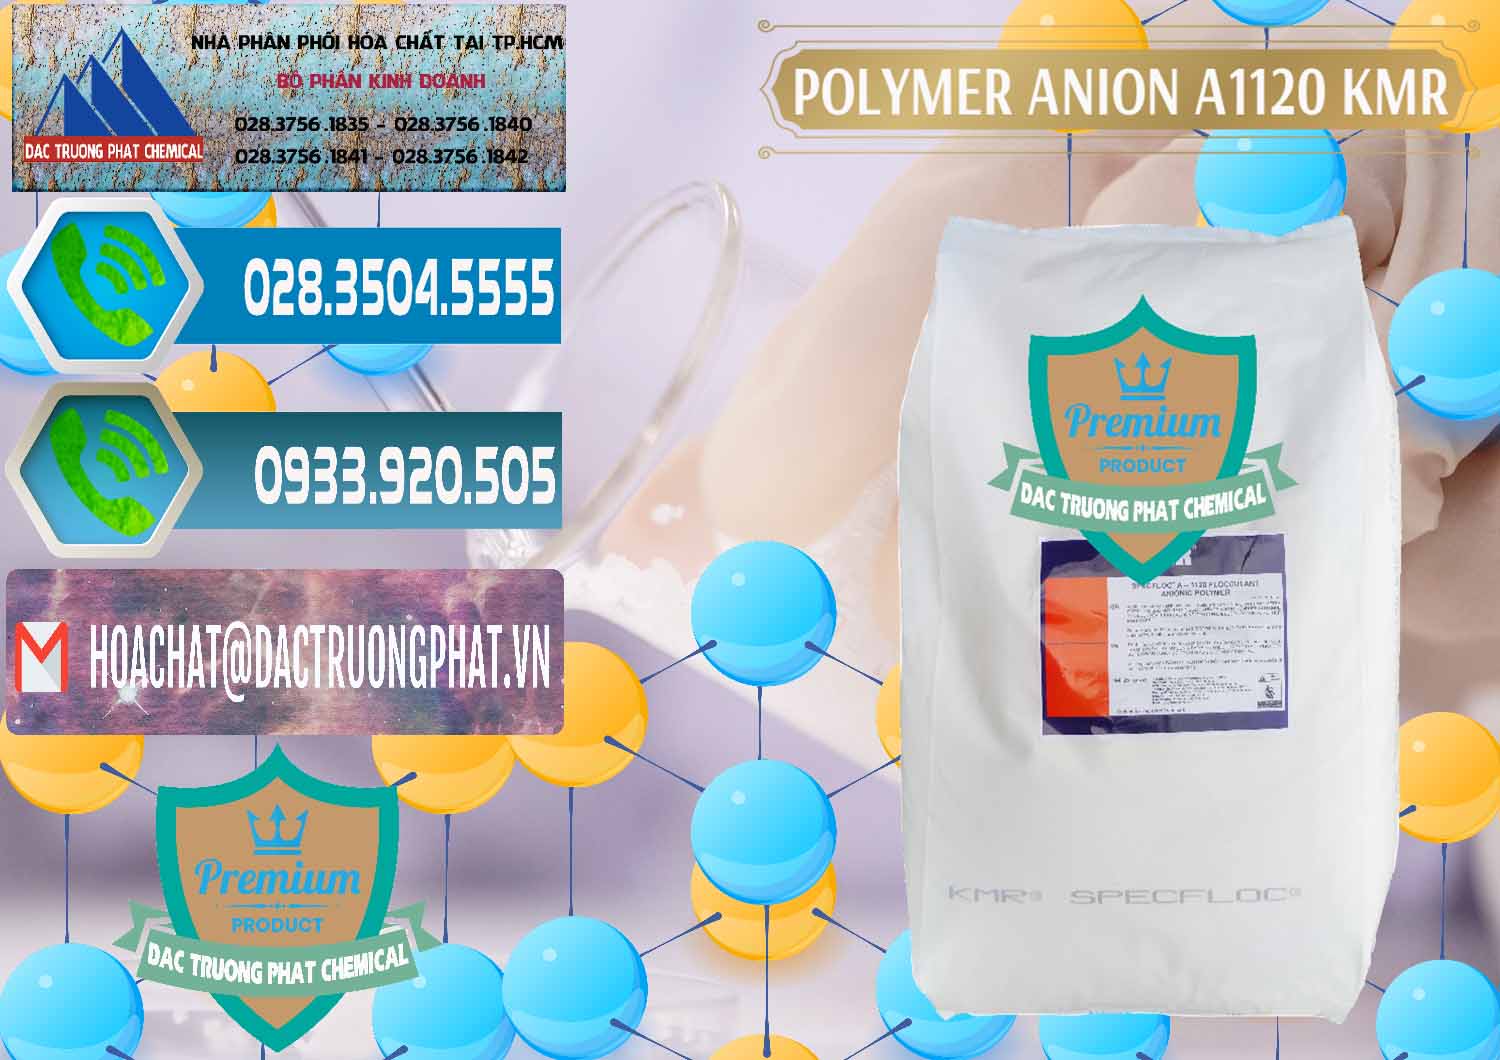 Đơn vị chuyên kinh doanh ( bán ) Polymer Anion A1120 - KMR Anh Quốc England - 0119 - Bán ( cung cấp ) hóa chất tại TP.HCM - congtyhoachat.net